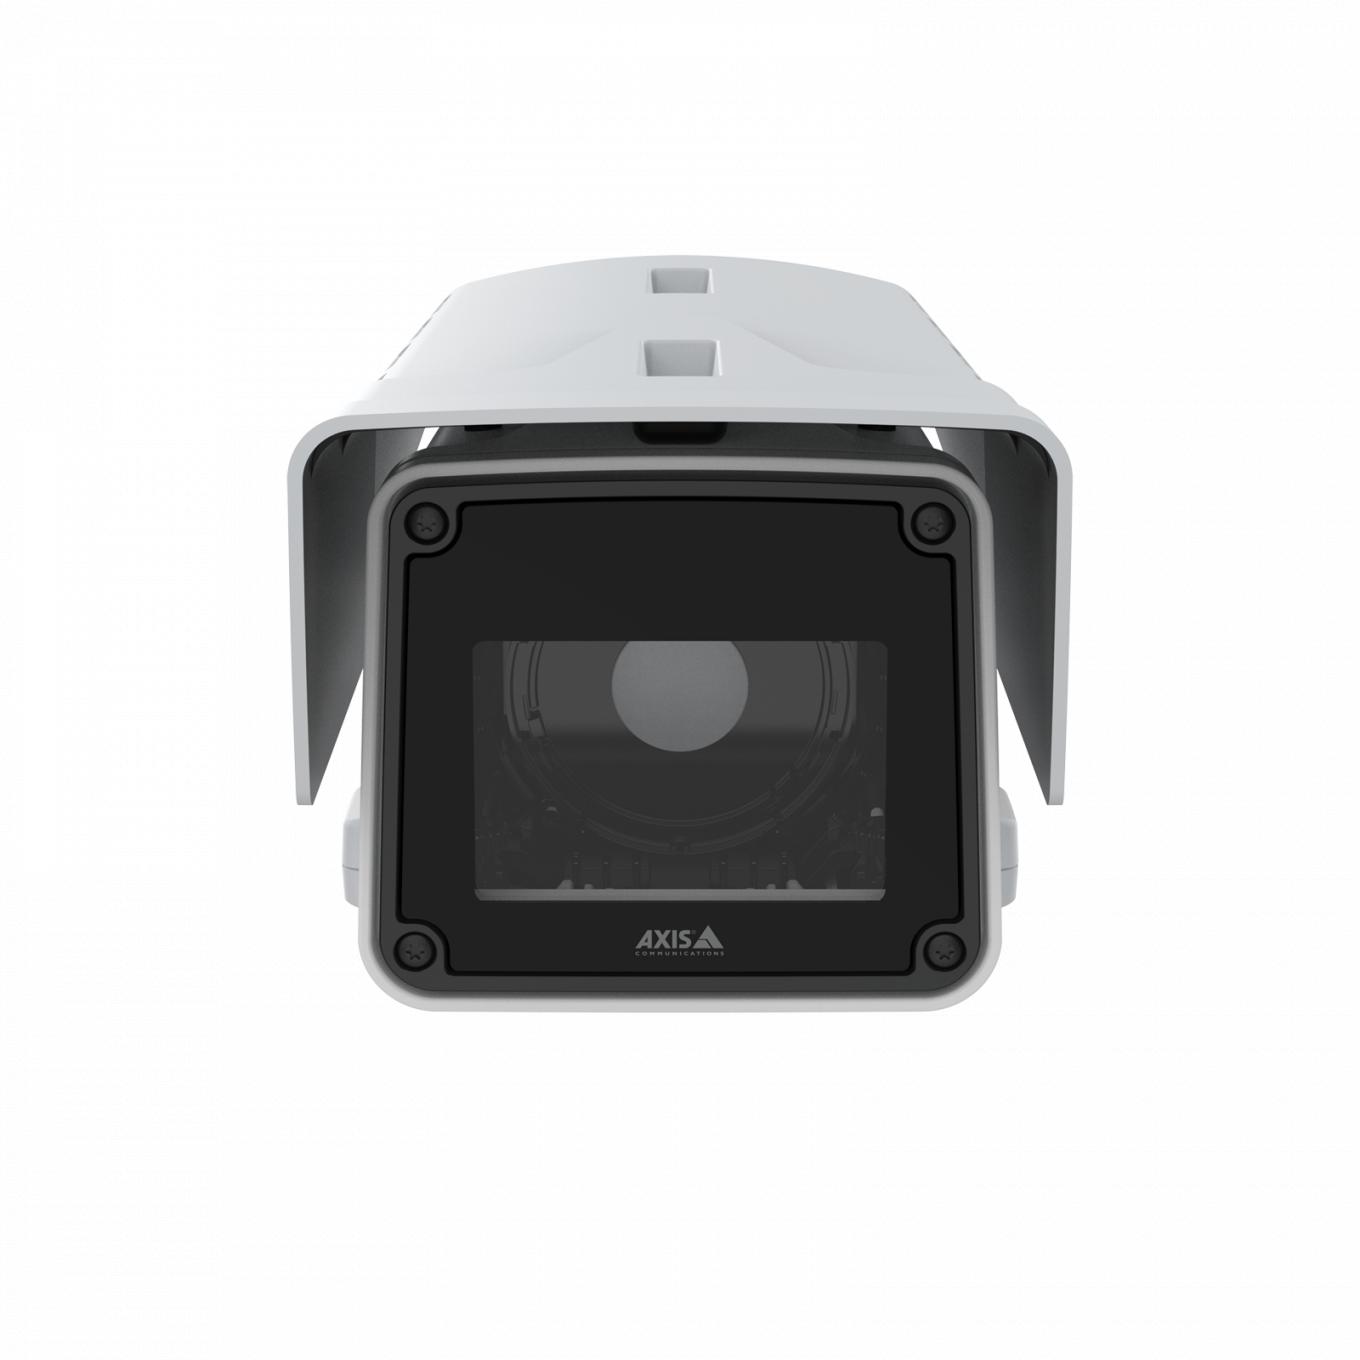 Корпусная камера AXIS Q1656-BE Box Camera, вид спереди